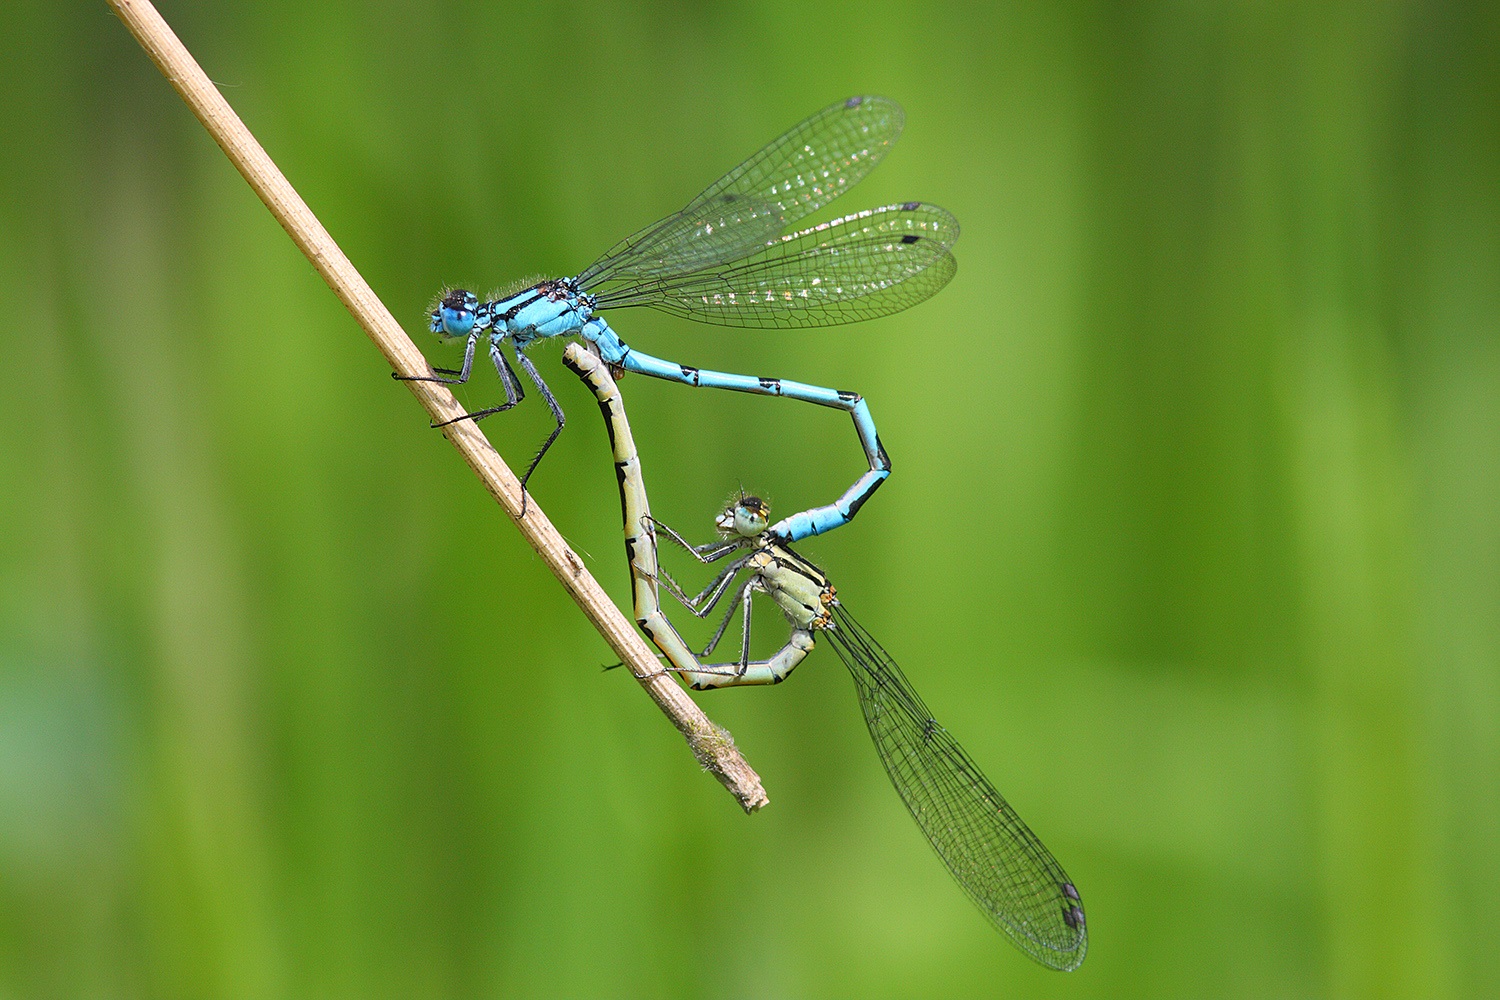 Dragonflies mate